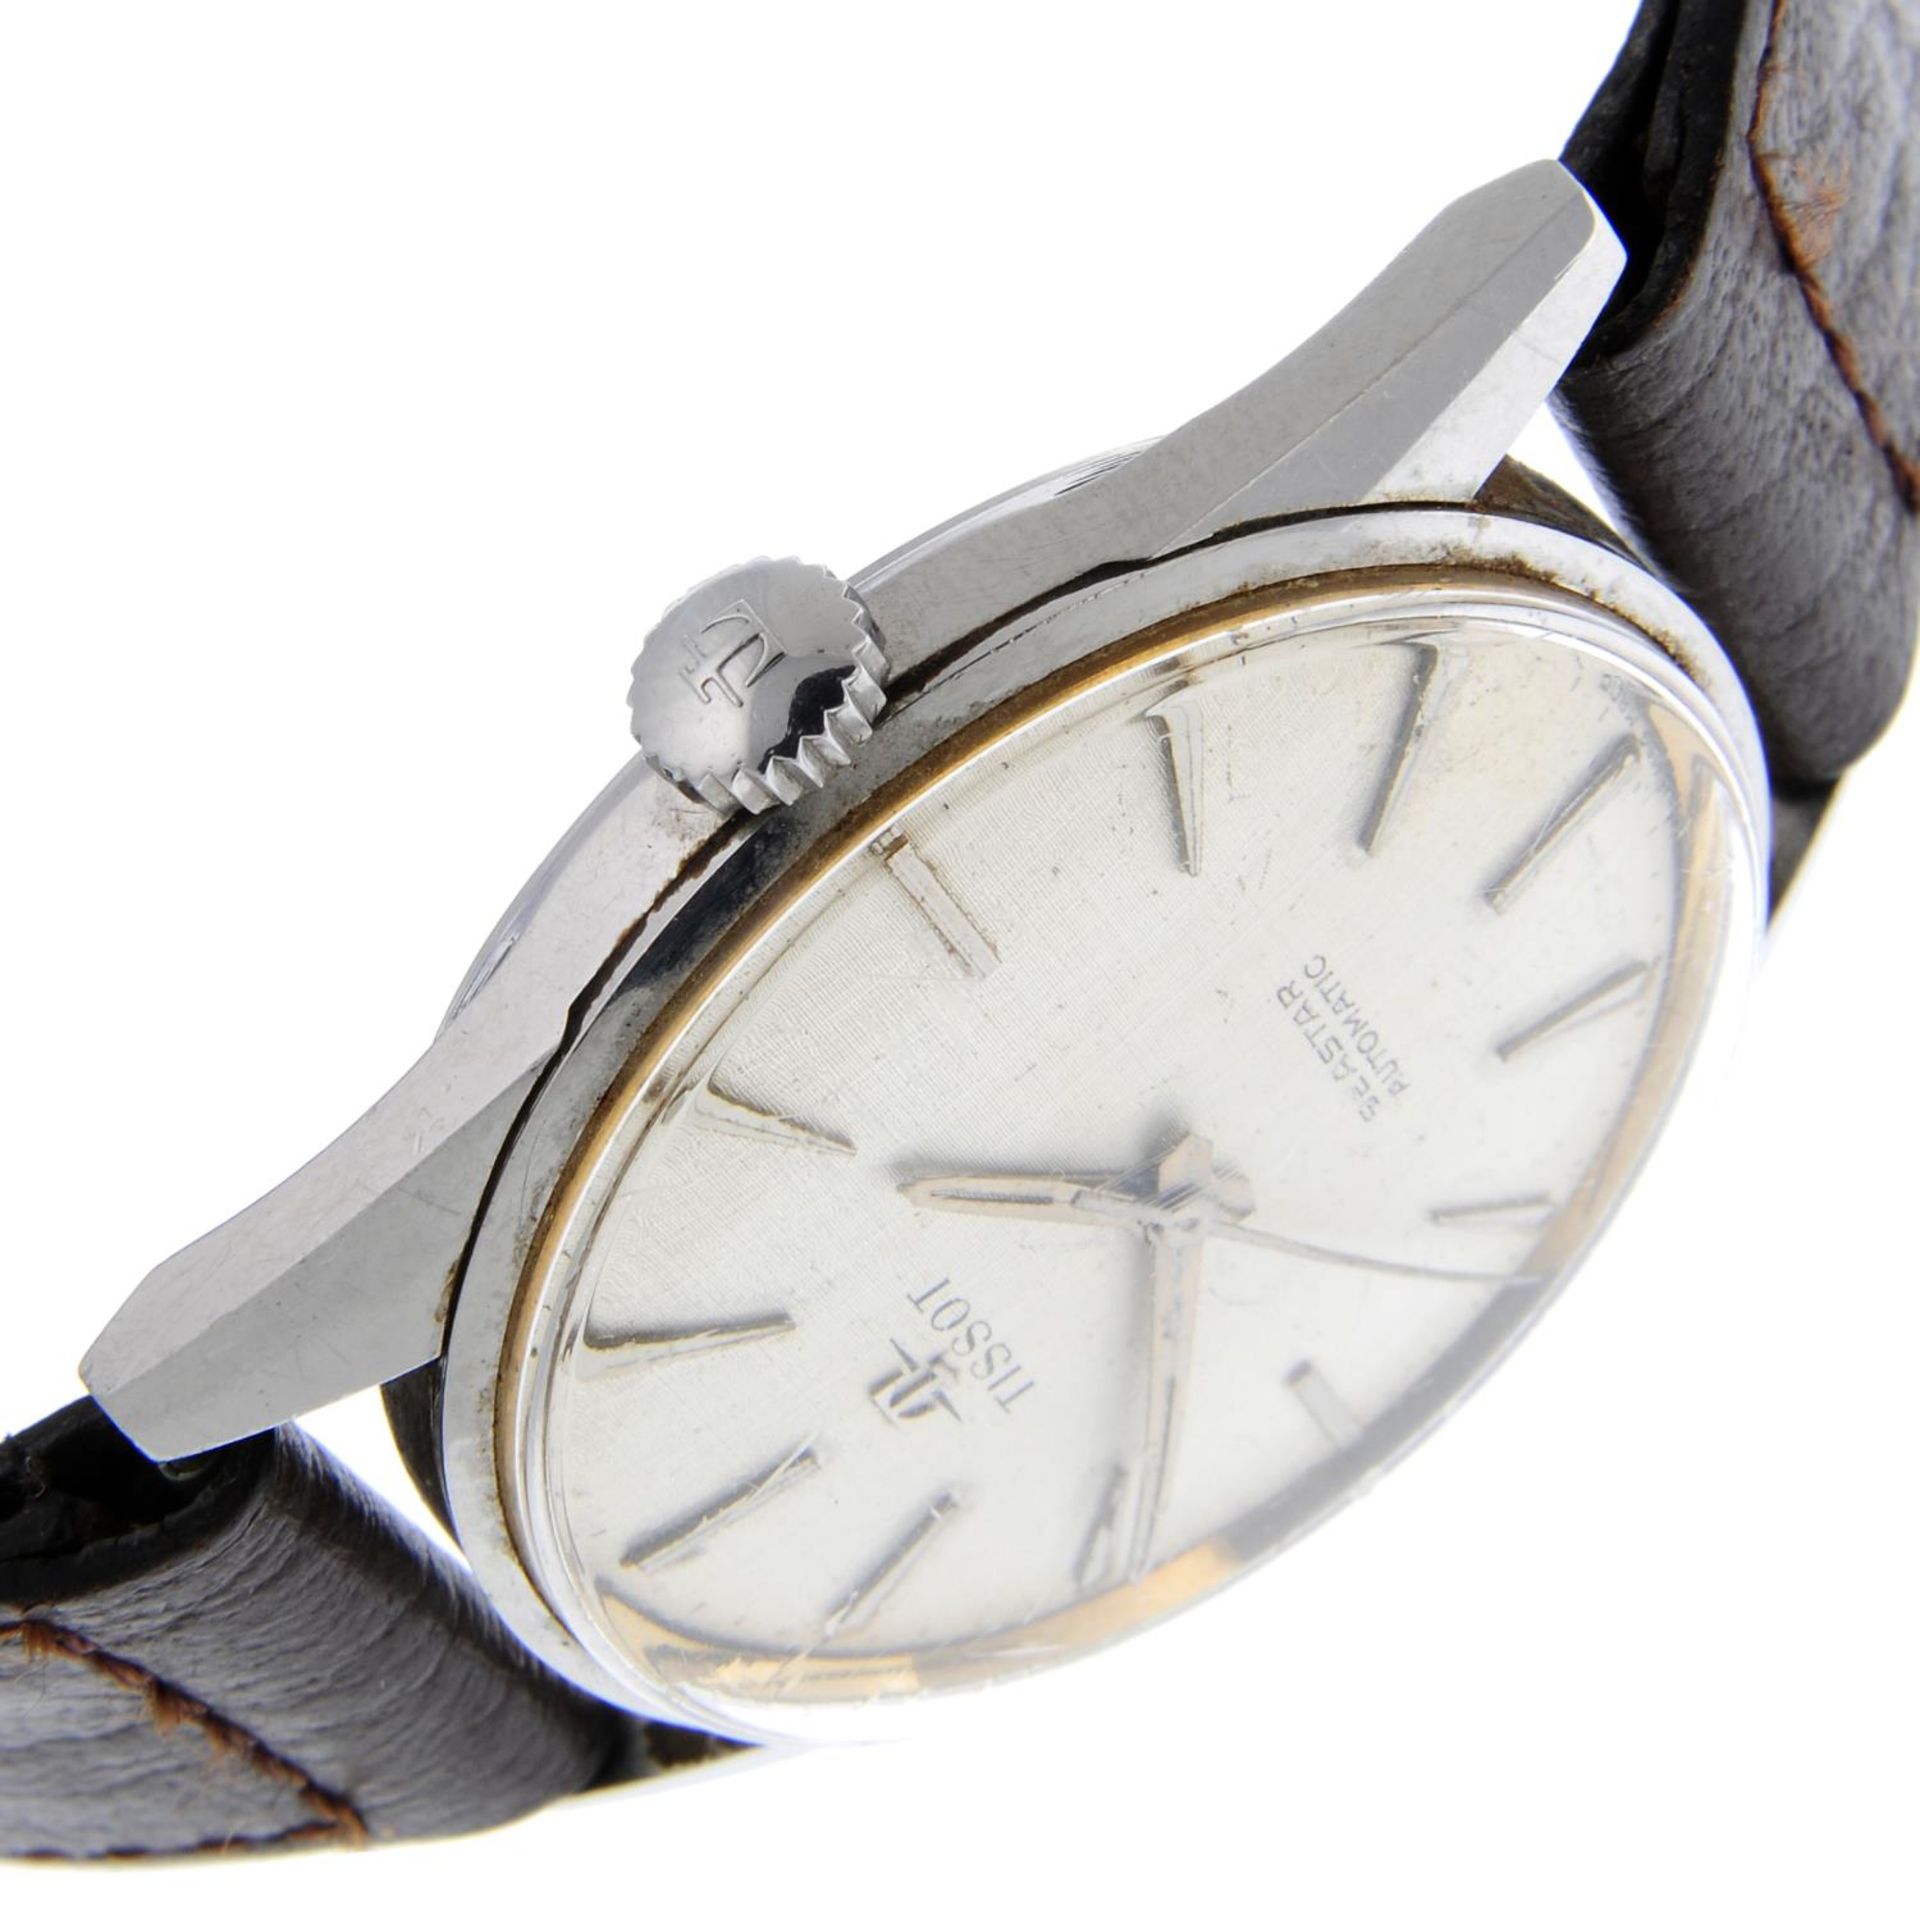 TISSOT - a gentleman's Seastar wrist watch. - Bild 3 aus 4